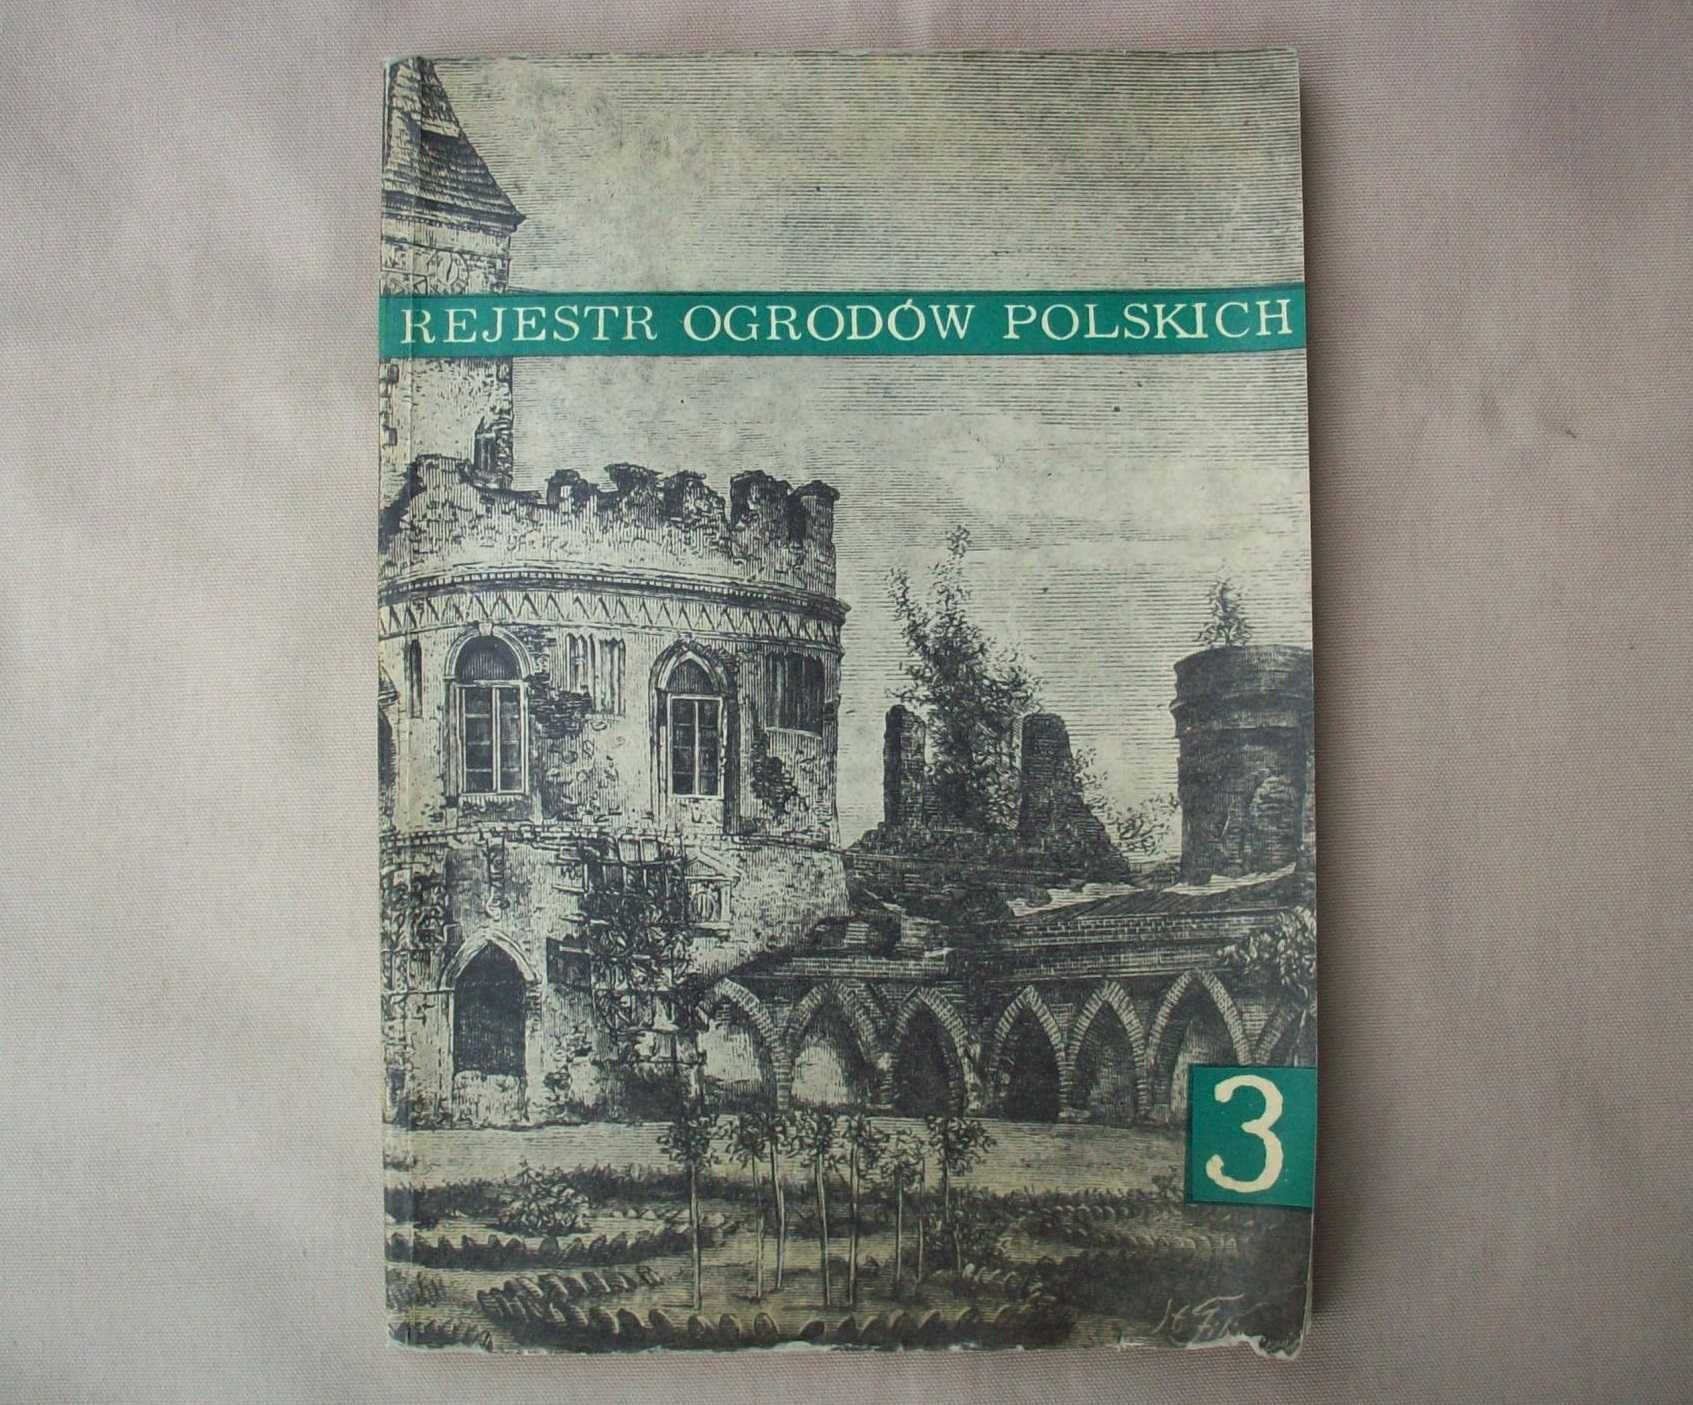 Rejestr ogrodów polskich, zeszyt 3, G.Ciołek, 1965.